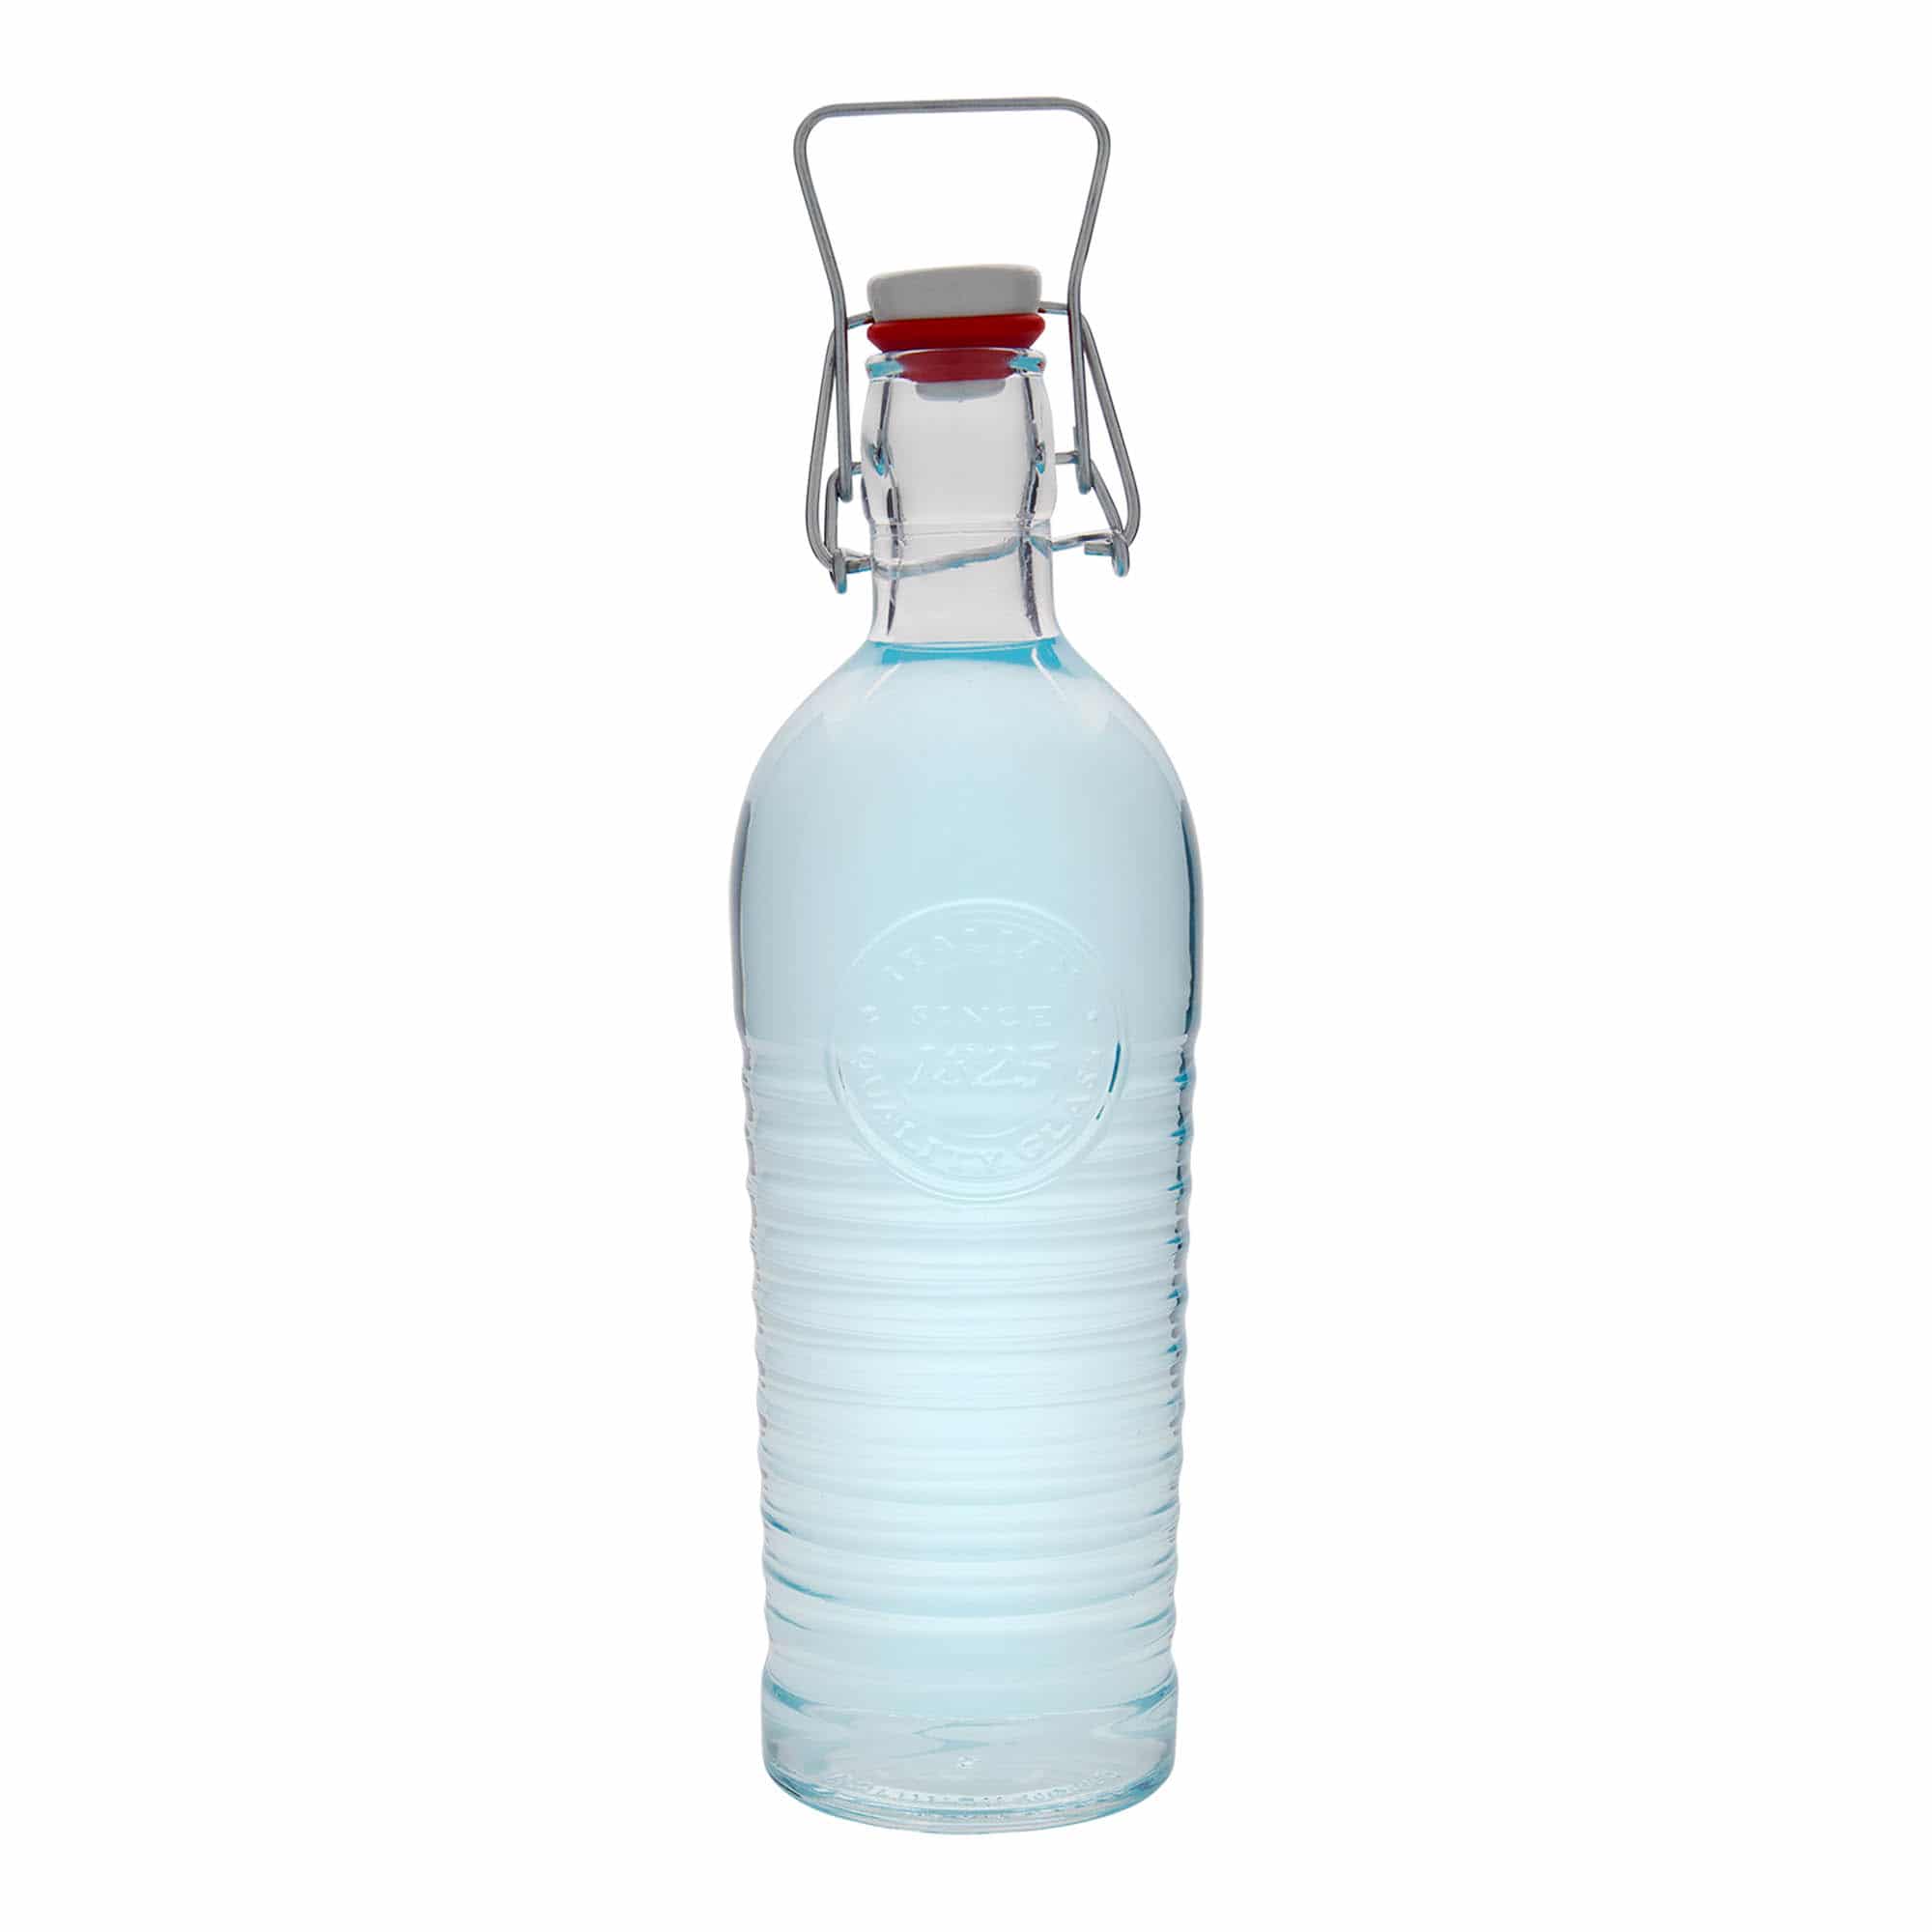 1200 ml-es üvegpalack 'Officina 1825', szájnyílás: csatos zár